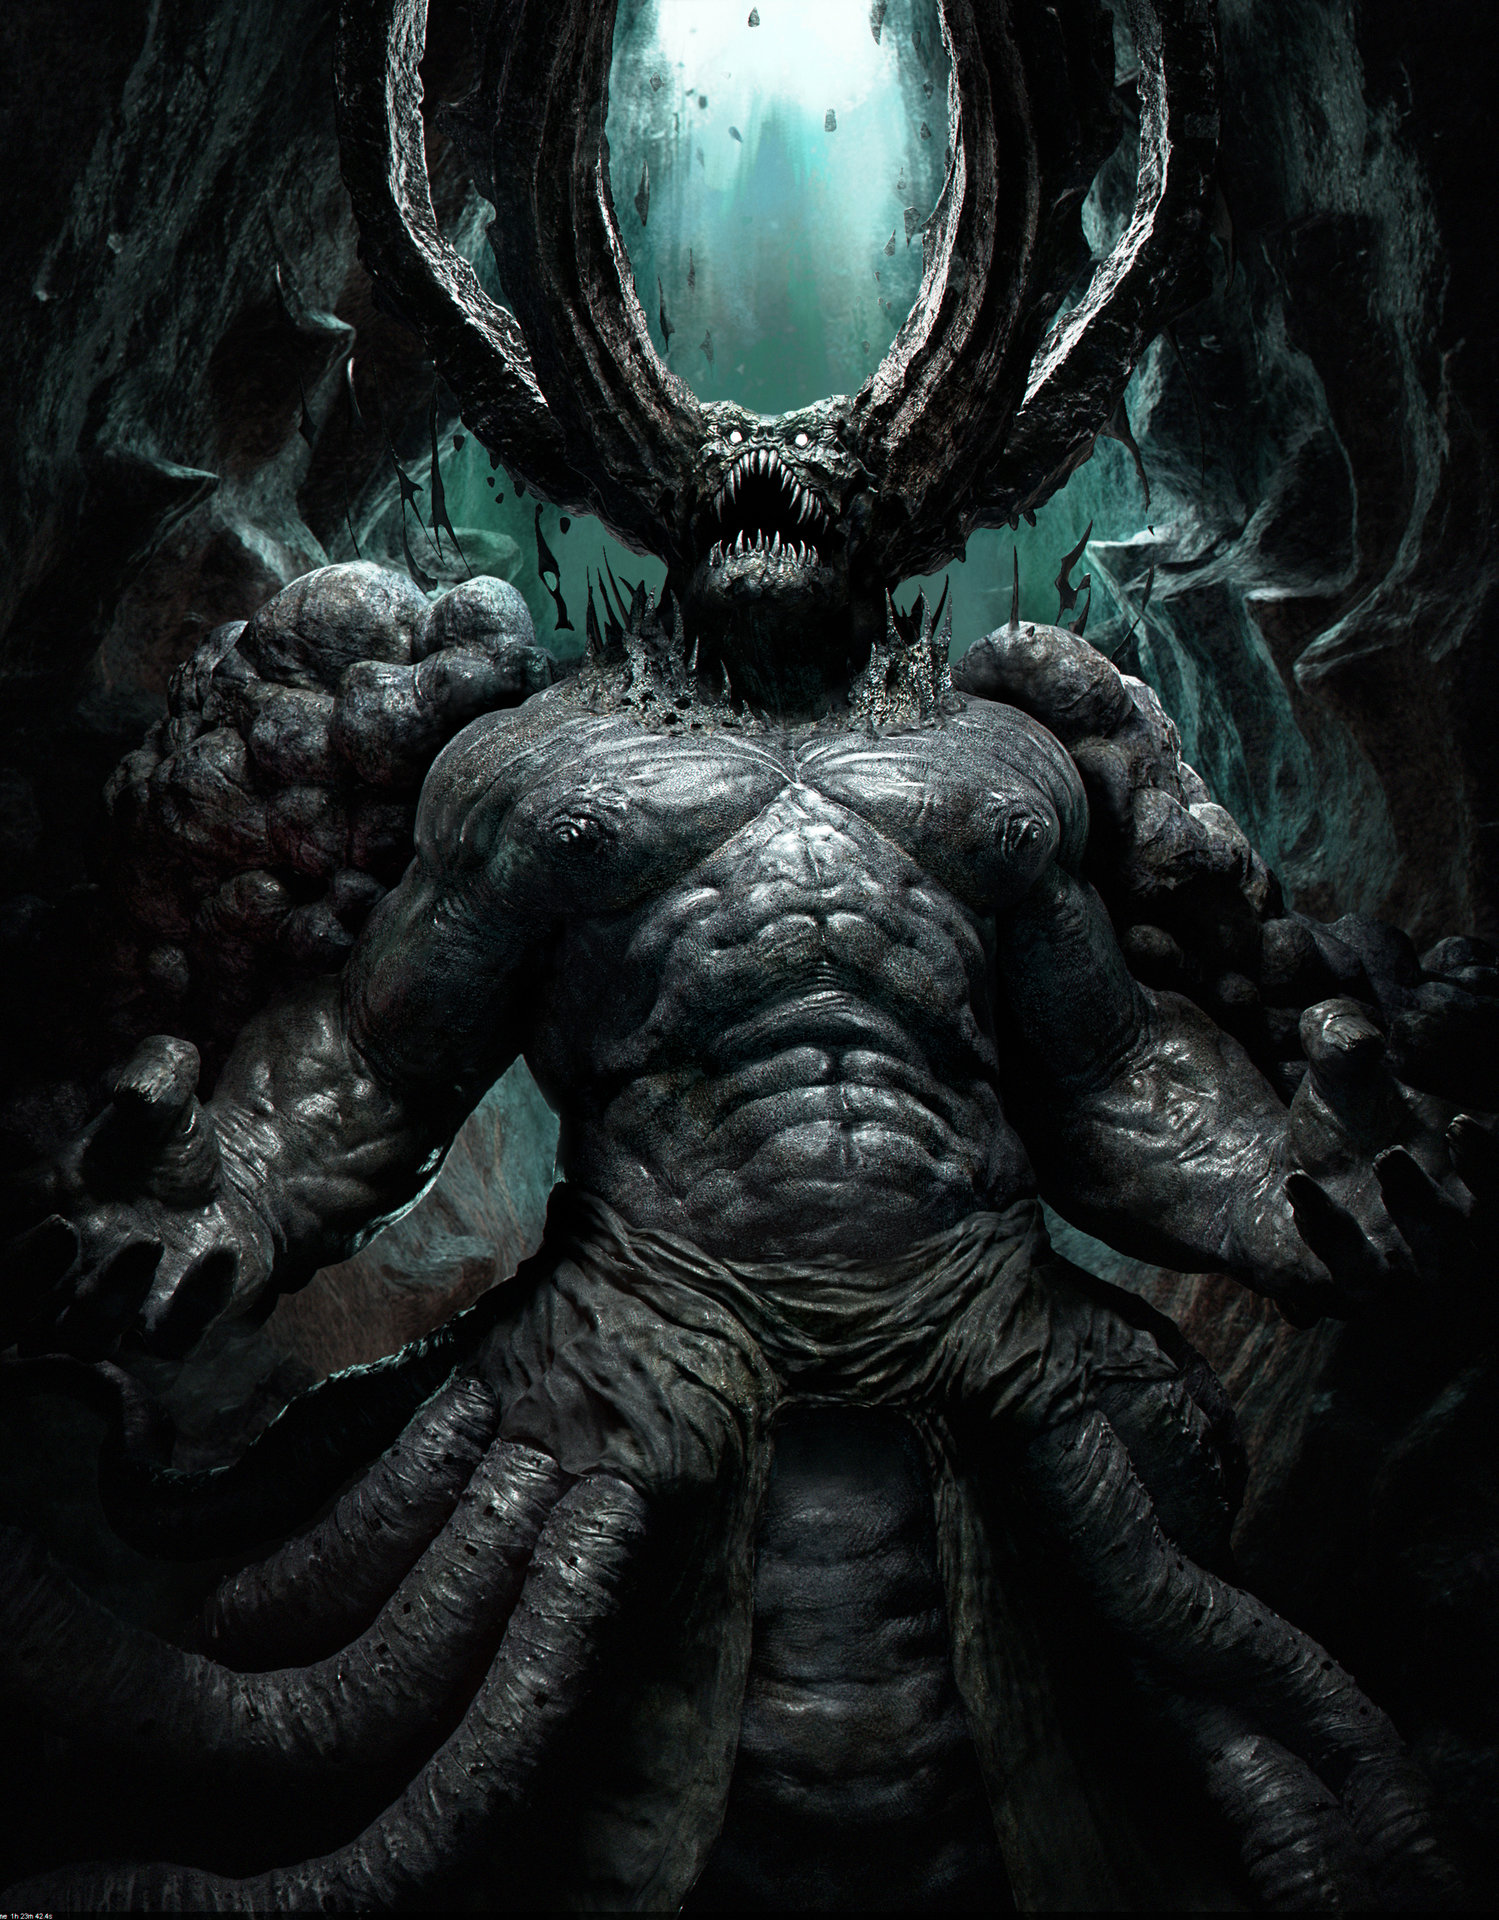 ArtStation - Demon Creature Demo